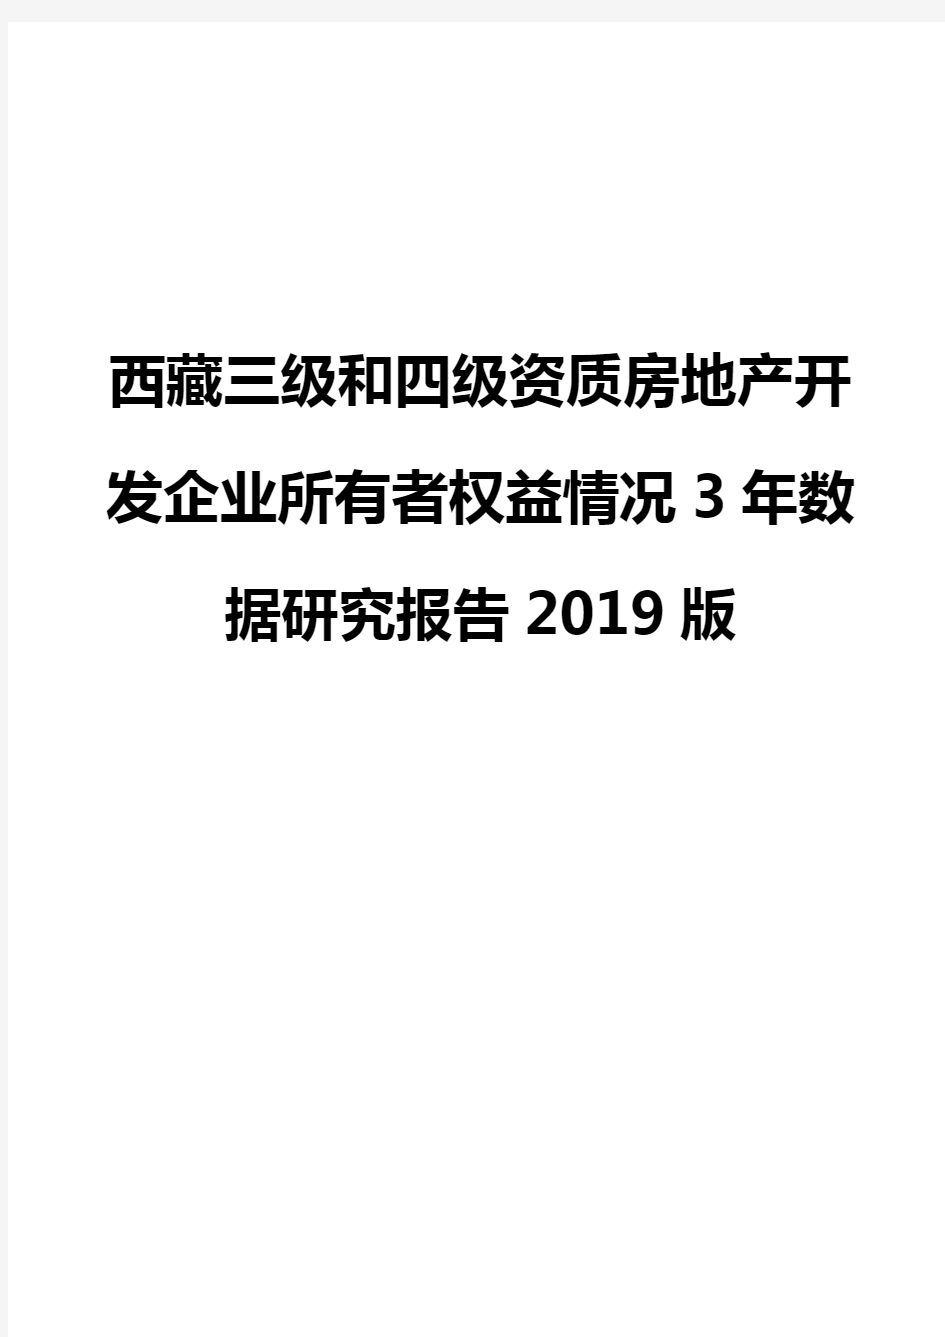 西藏三级和四级资质房地产开发企业所有者权益情况3年数据研究报告2019版